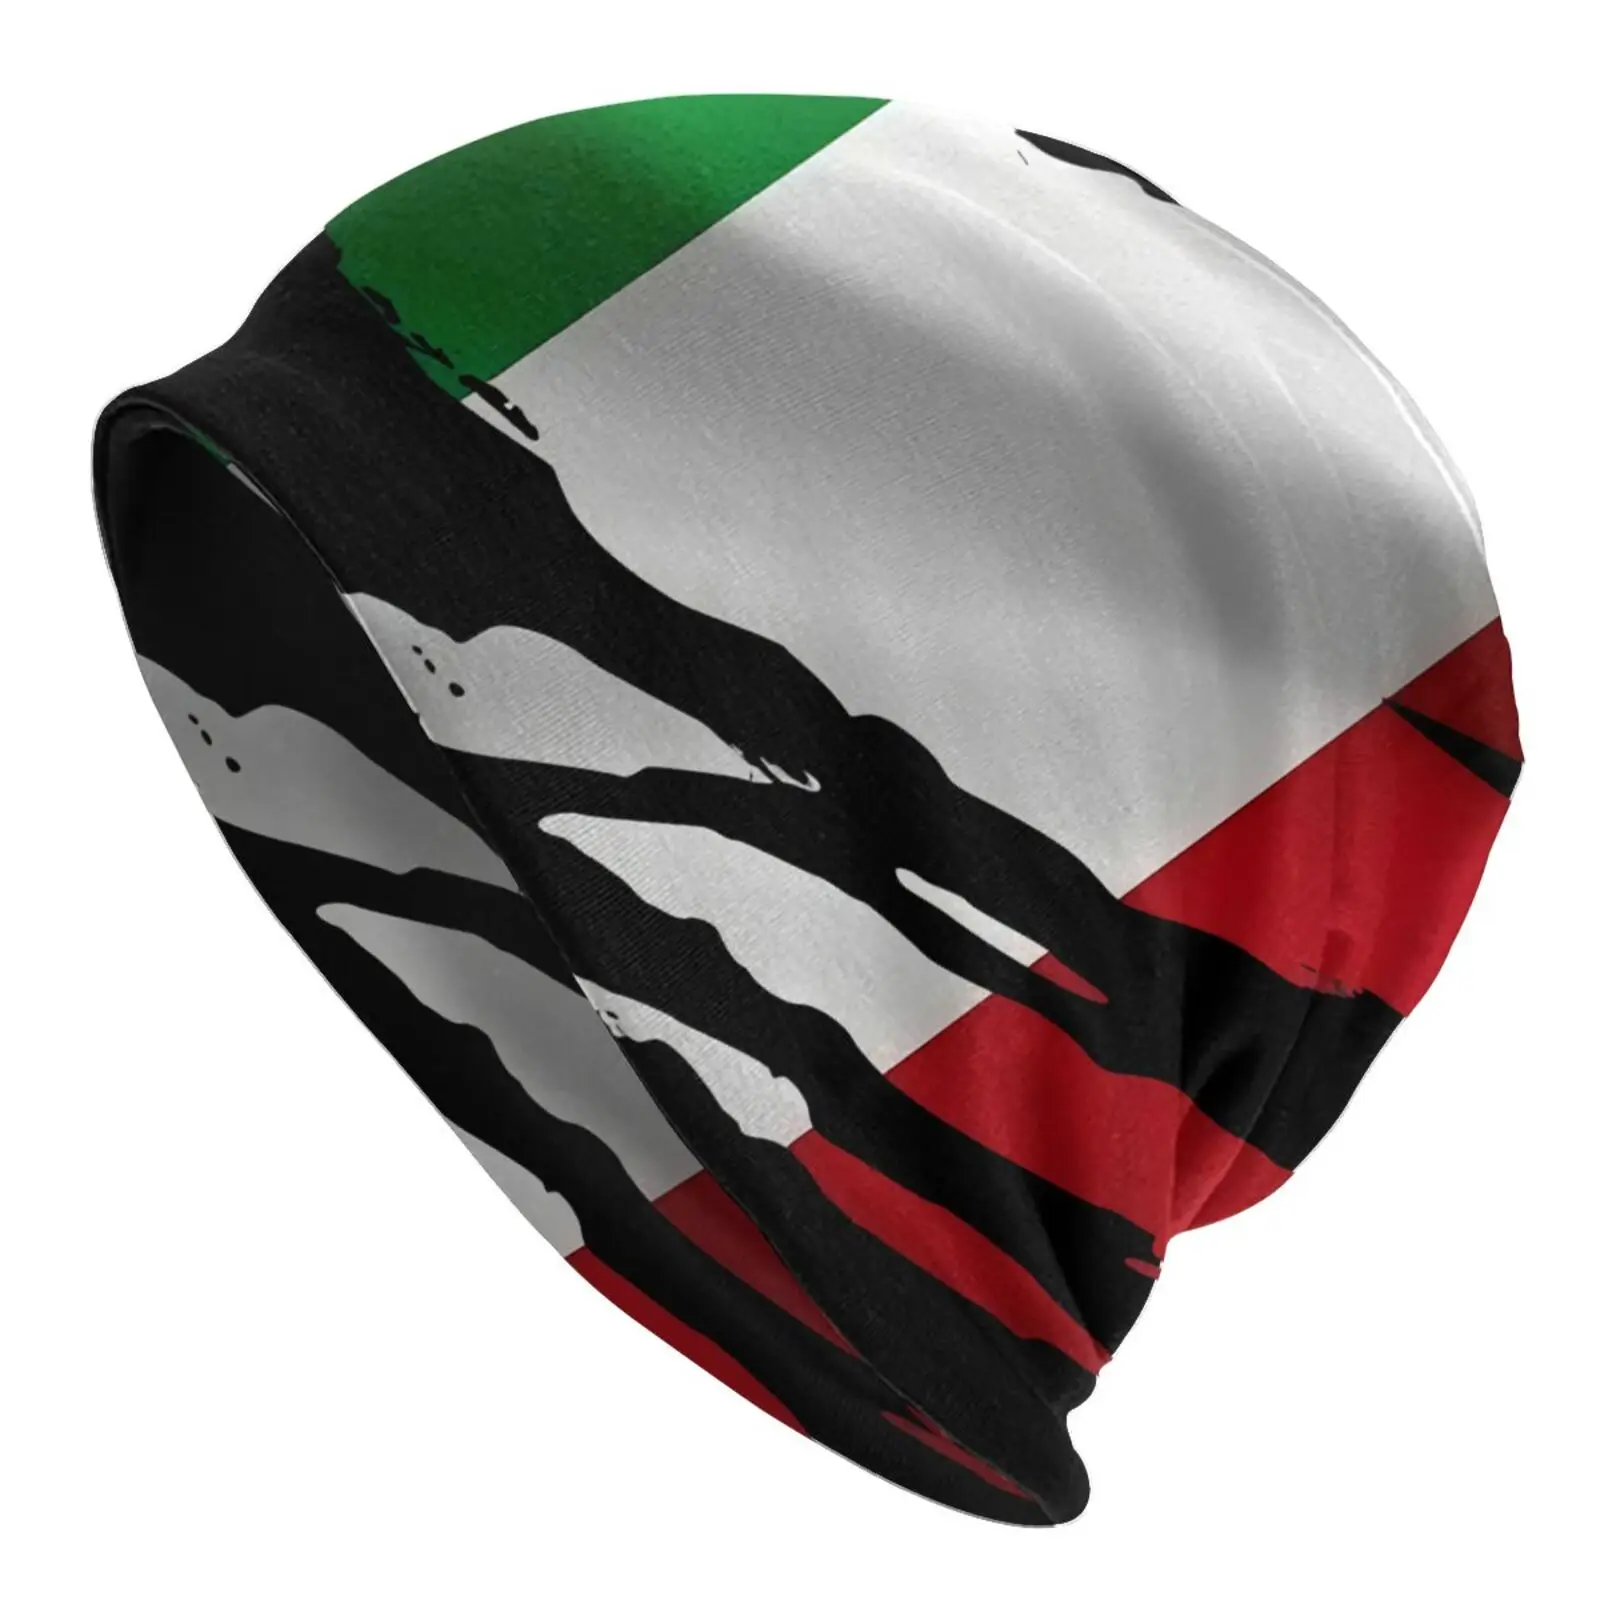 

Рваный итальянский флаг, итальянская, римская страна, мужские кепки, мужские шапки, мужские кепки, дизайнерская шапка s, Балаклава, шапки в ст...